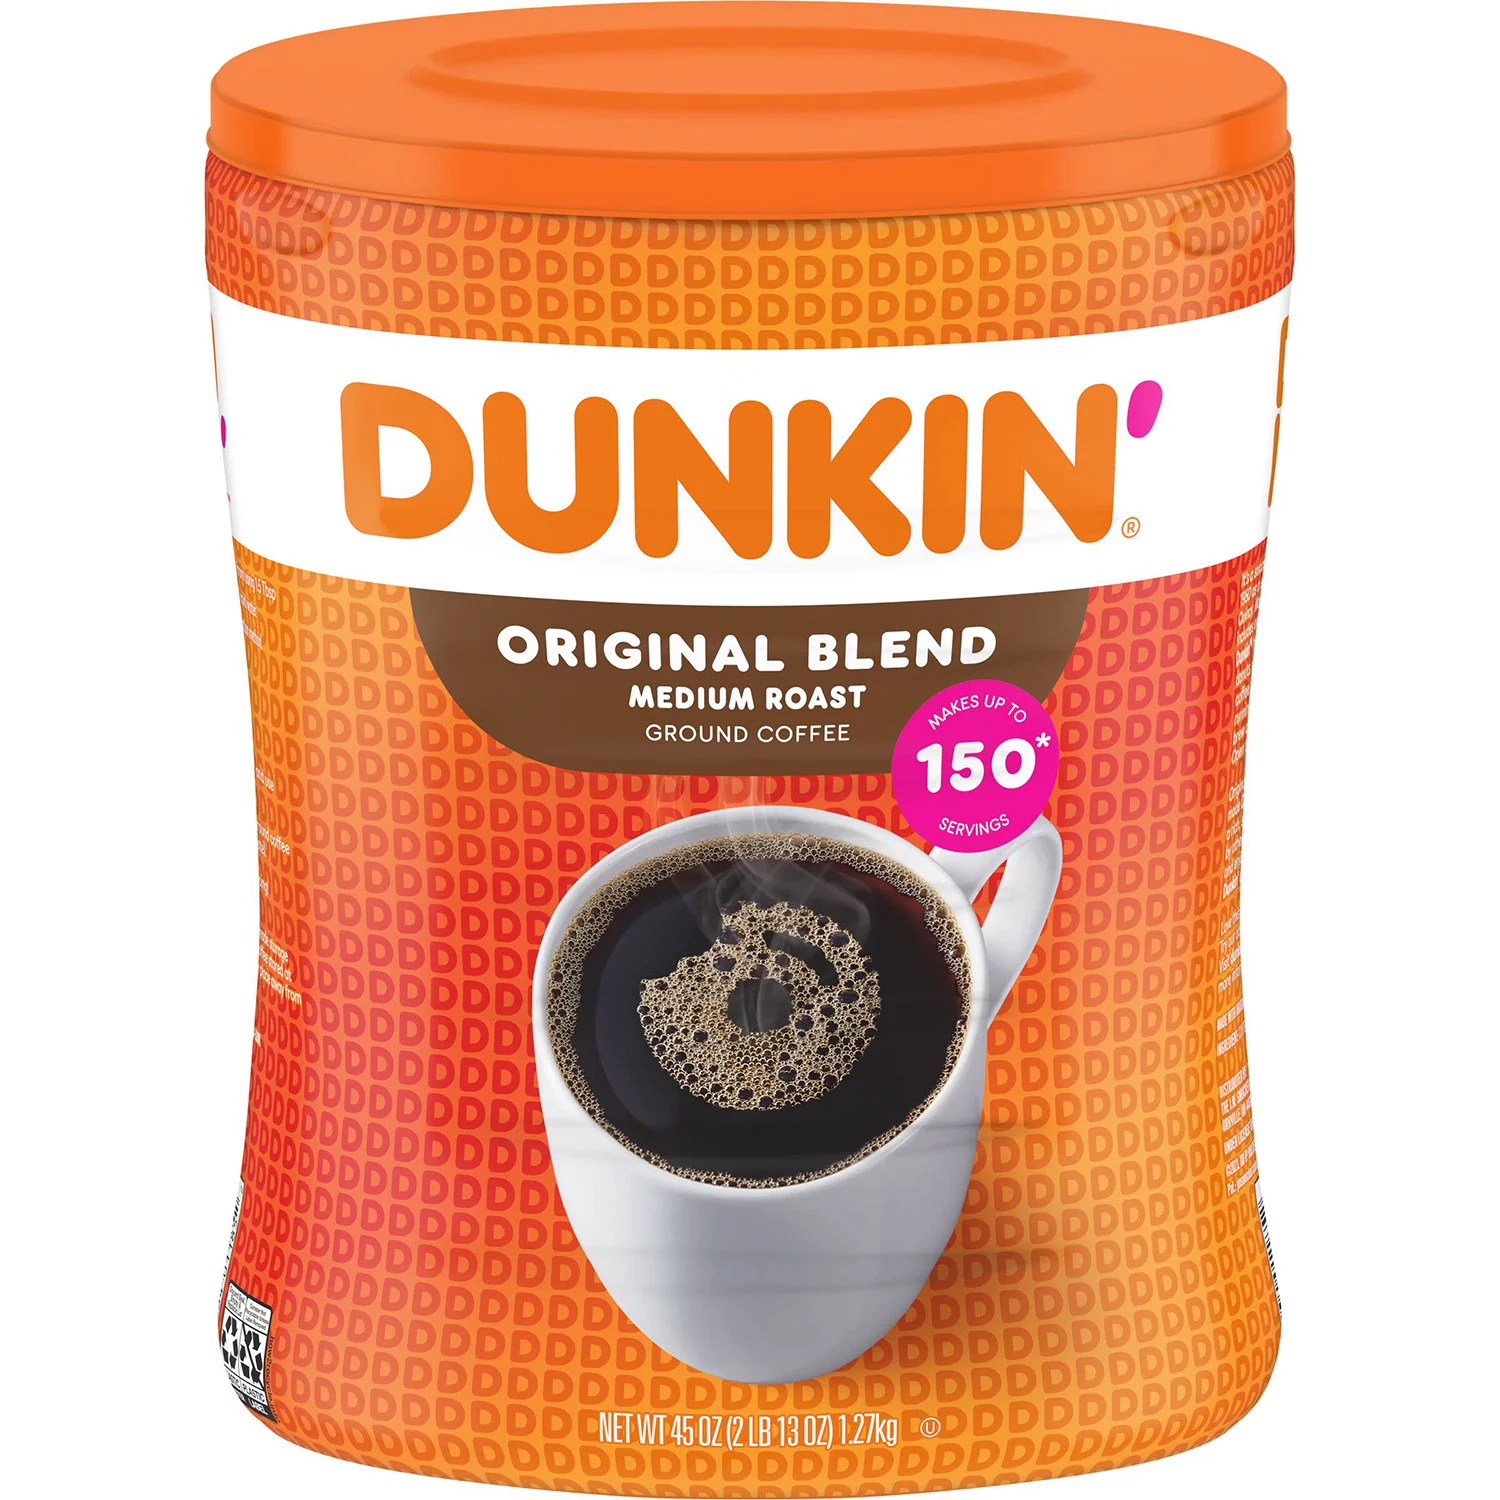 Dunkin' Donuts Original Blend Ground Coffee